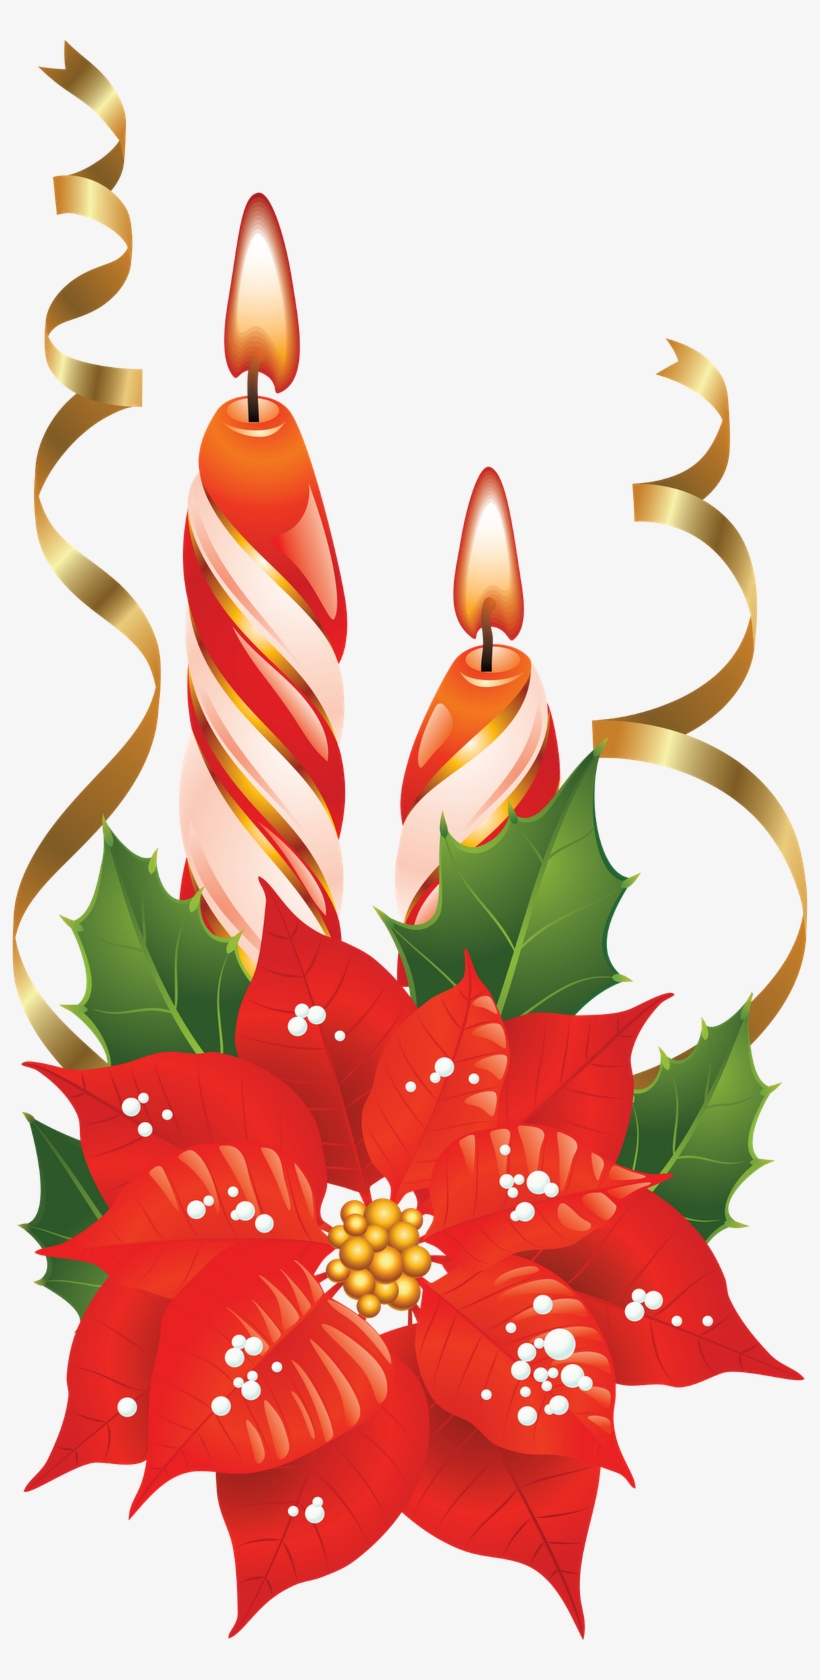 Dibujos De Navidad, Nochebuena, Imágenes De Navidad, - Christmas Decoration  Png Moving - Free Transparent PNG Download - PNGkey